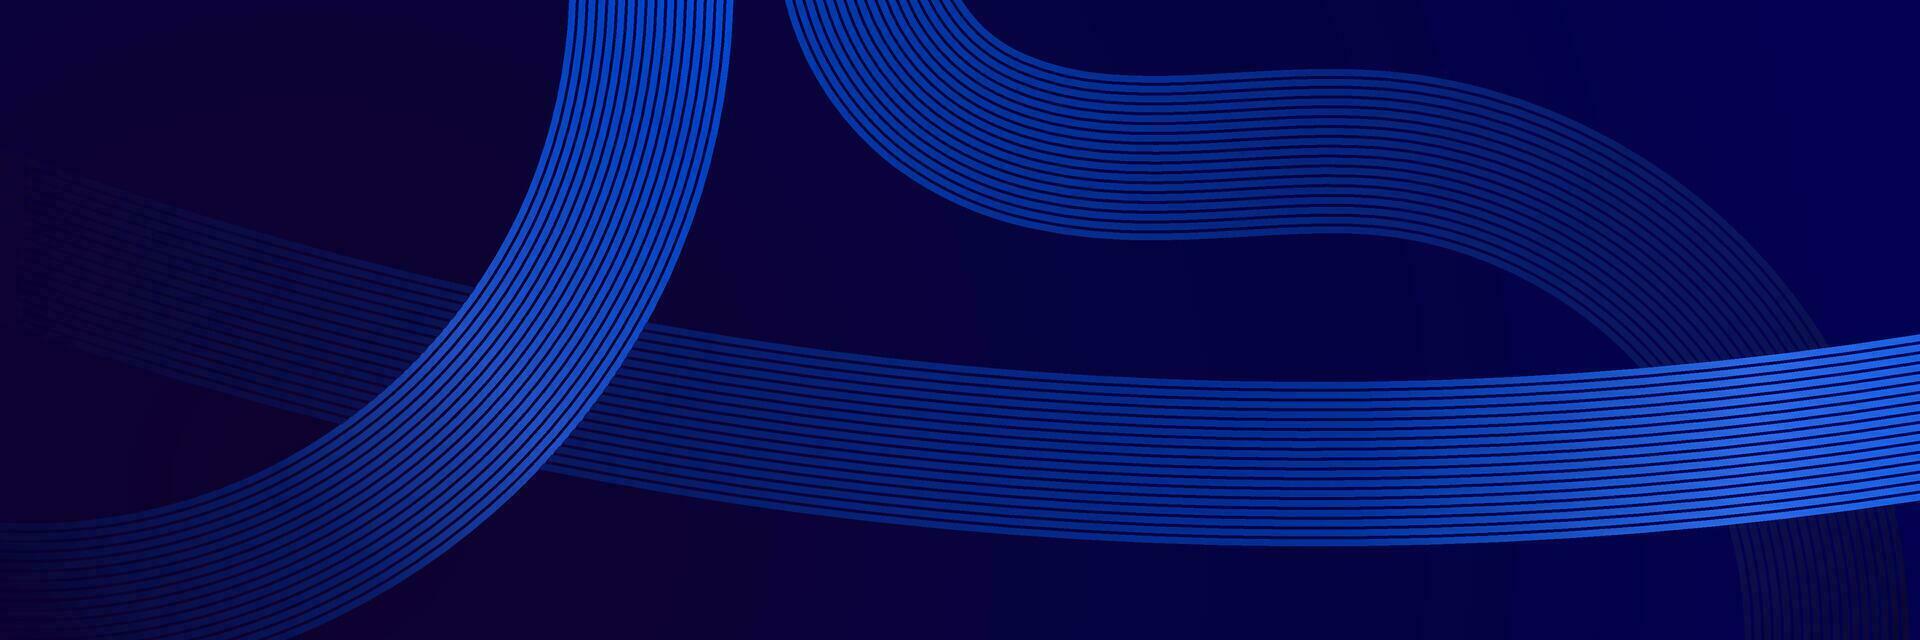 abstrakter blauer Hintergrund mit Linien vektor